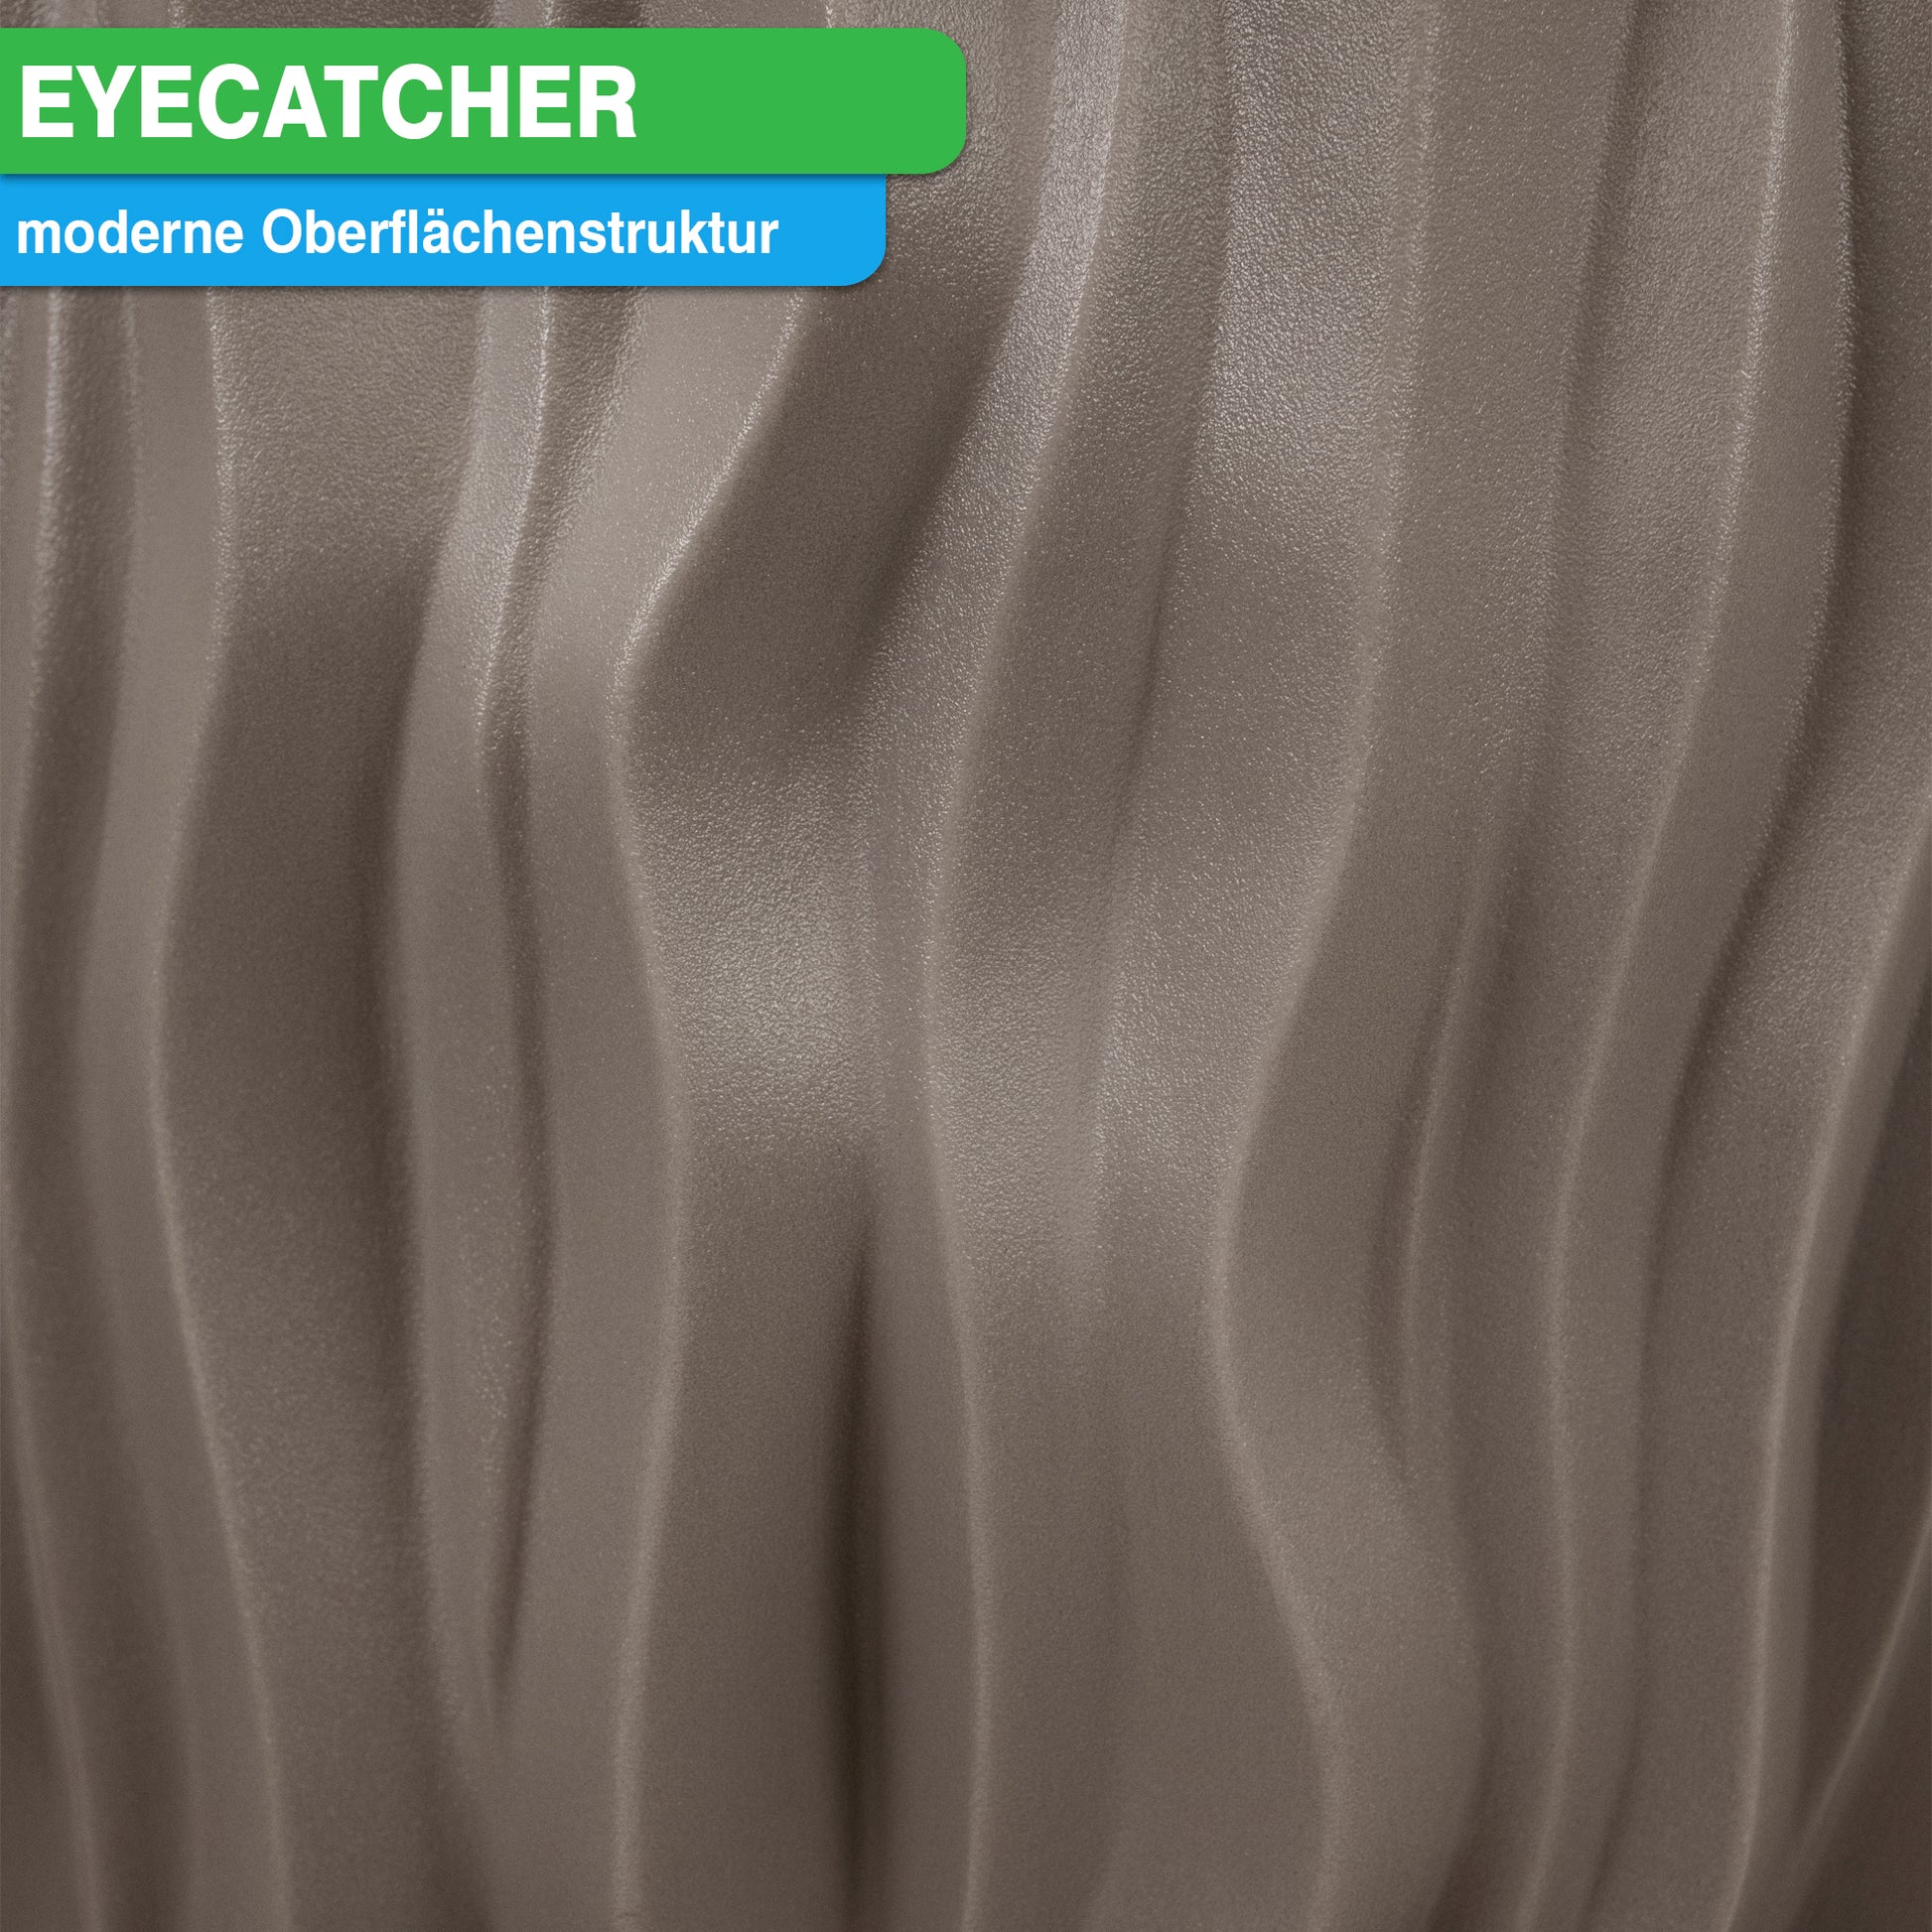 Eyecatcher - YourCasa Regentonne 160 Liter [AquaDesign Flower] mit Metallgewinde und Pflanzkübel- Regenfass Frostsicher aus Kunststoff - Regenwassertonne - Regenwassertank Garten.